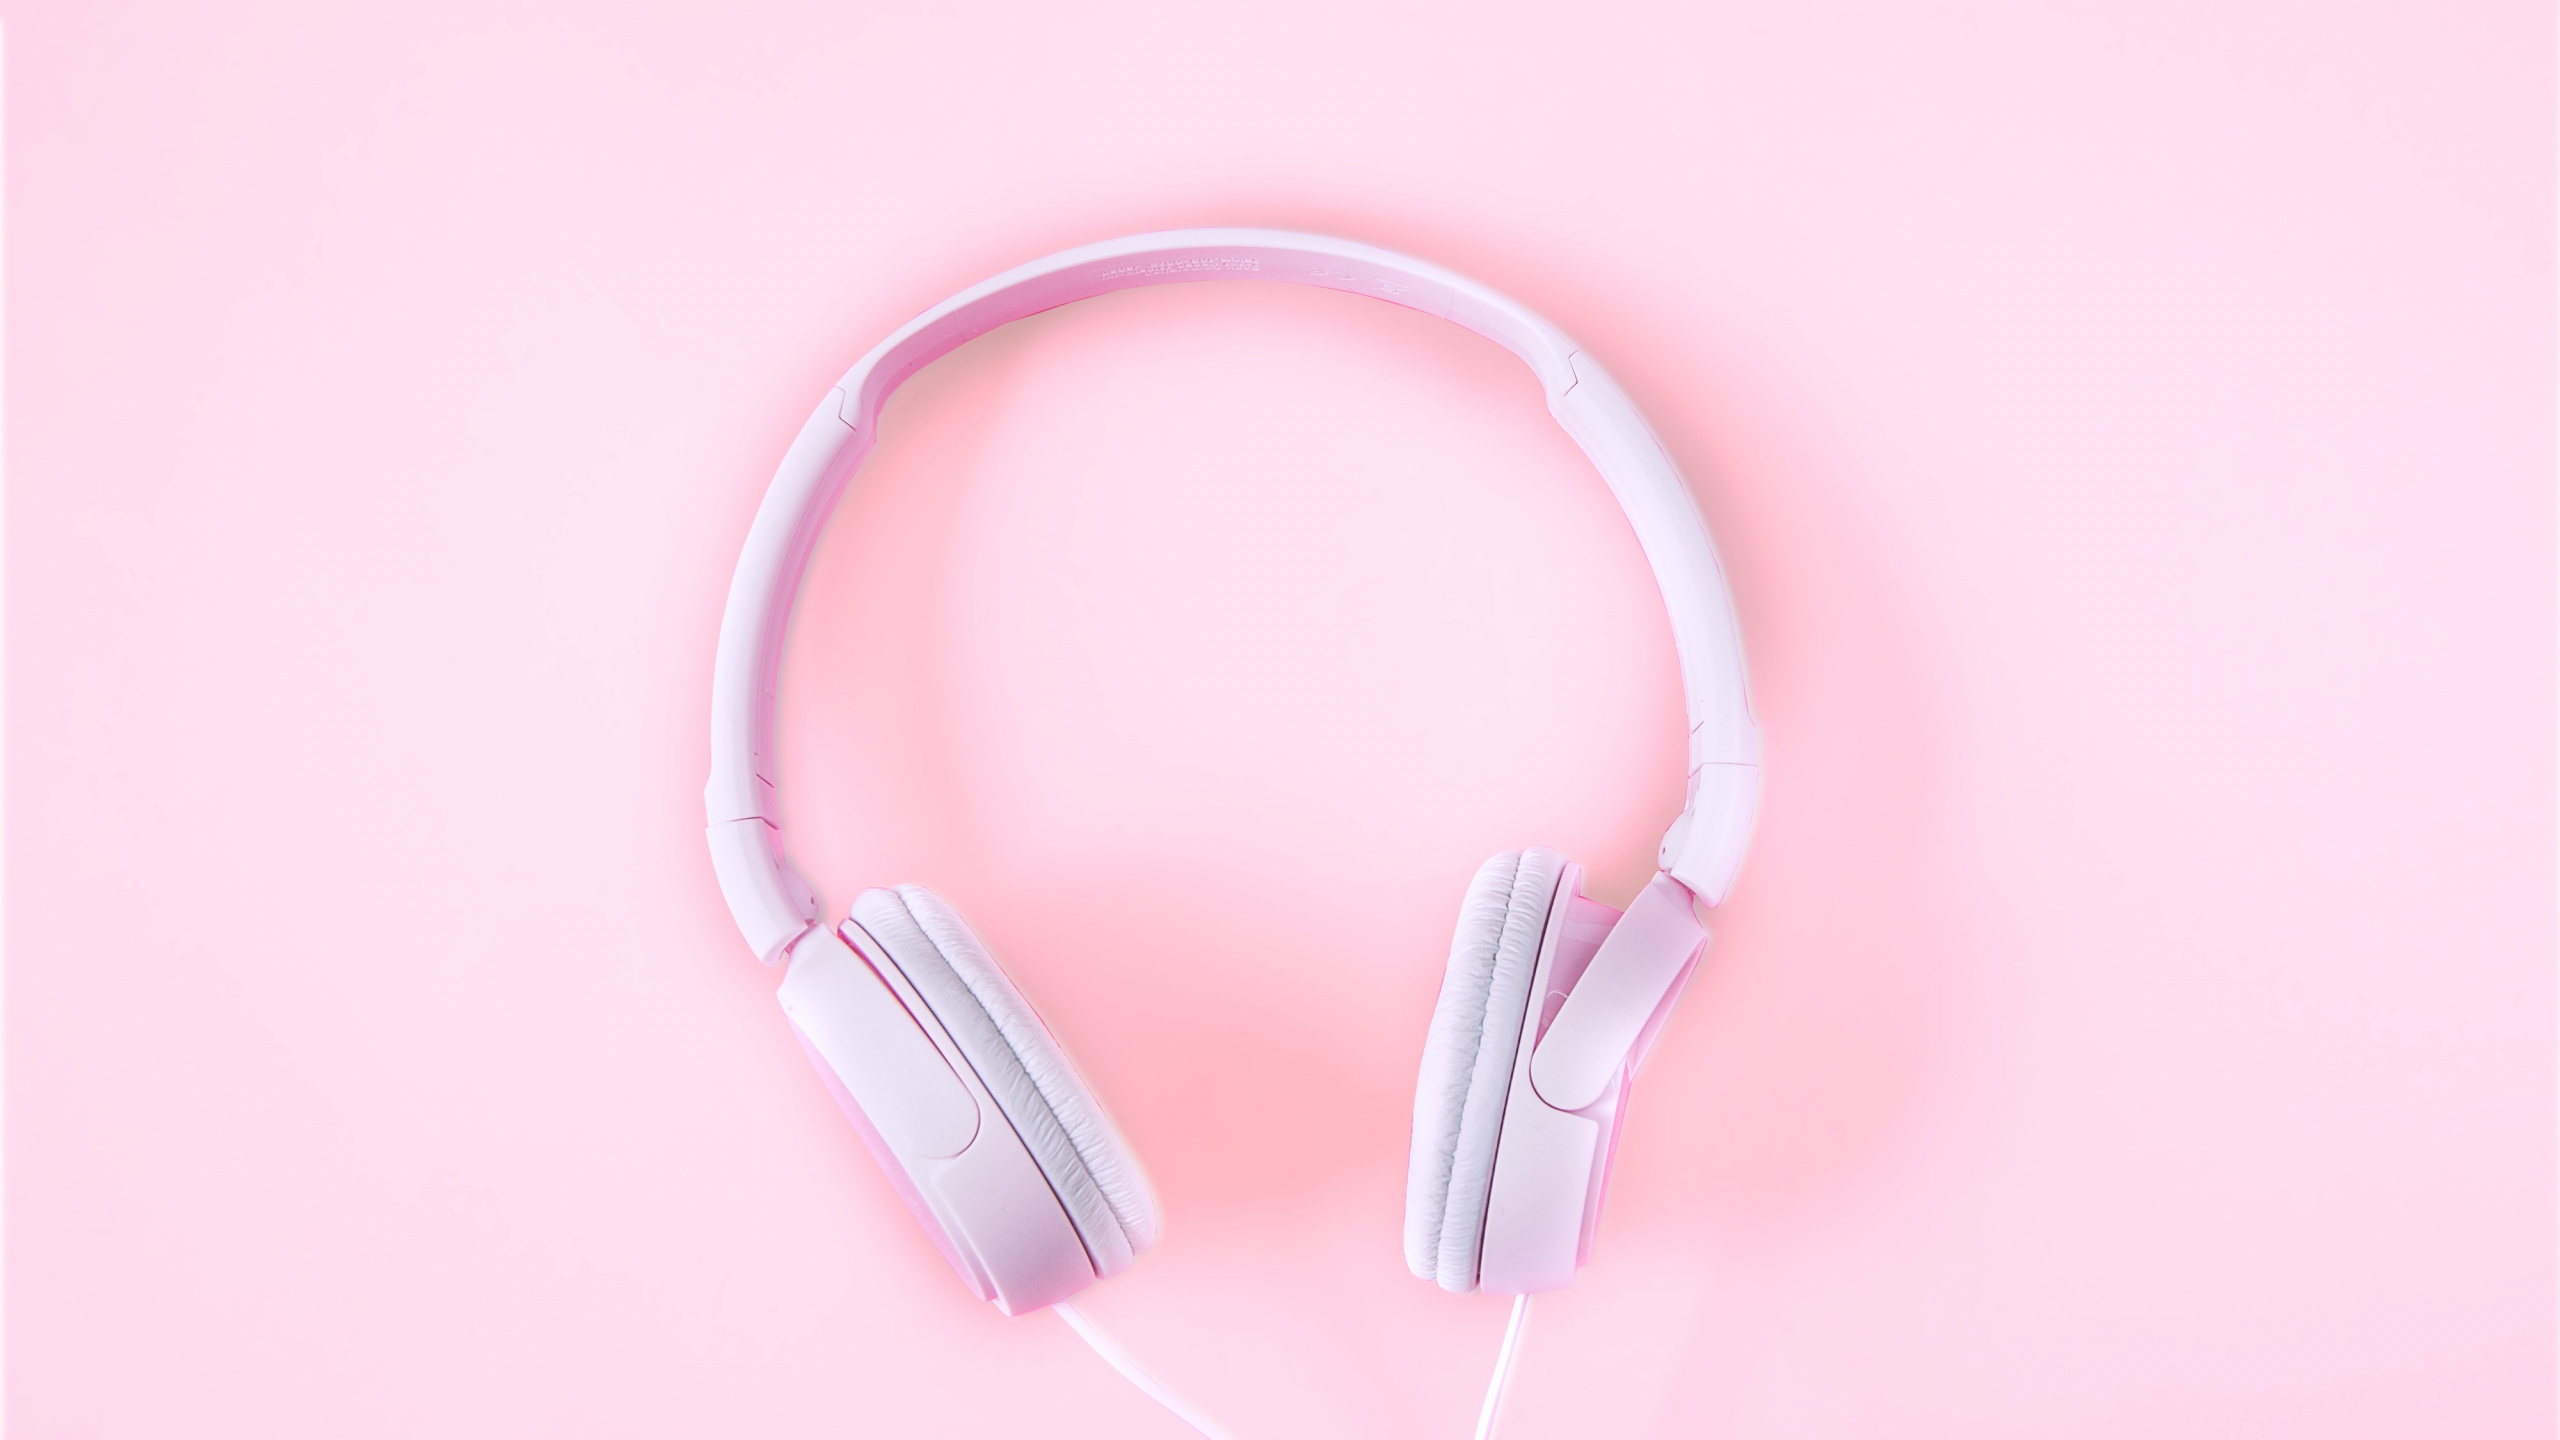 粉红色, 音频设备, 小工具, 耳朵, 电子设备 壁纸 2560x1440 允许